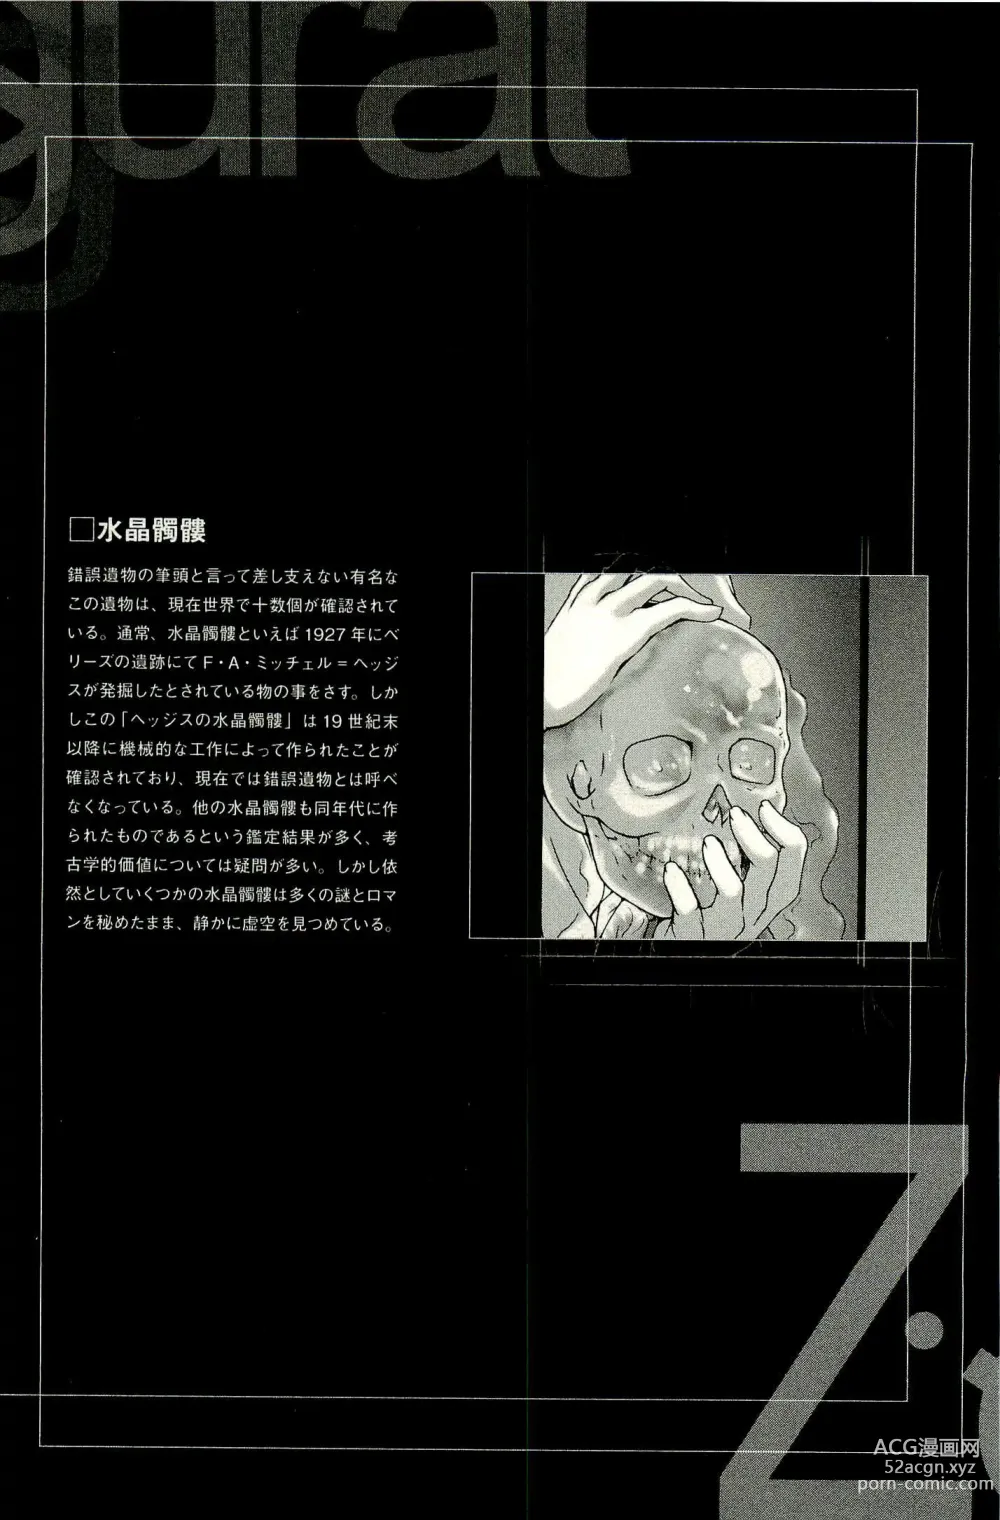 Page 198 of manga Ziggurat 1